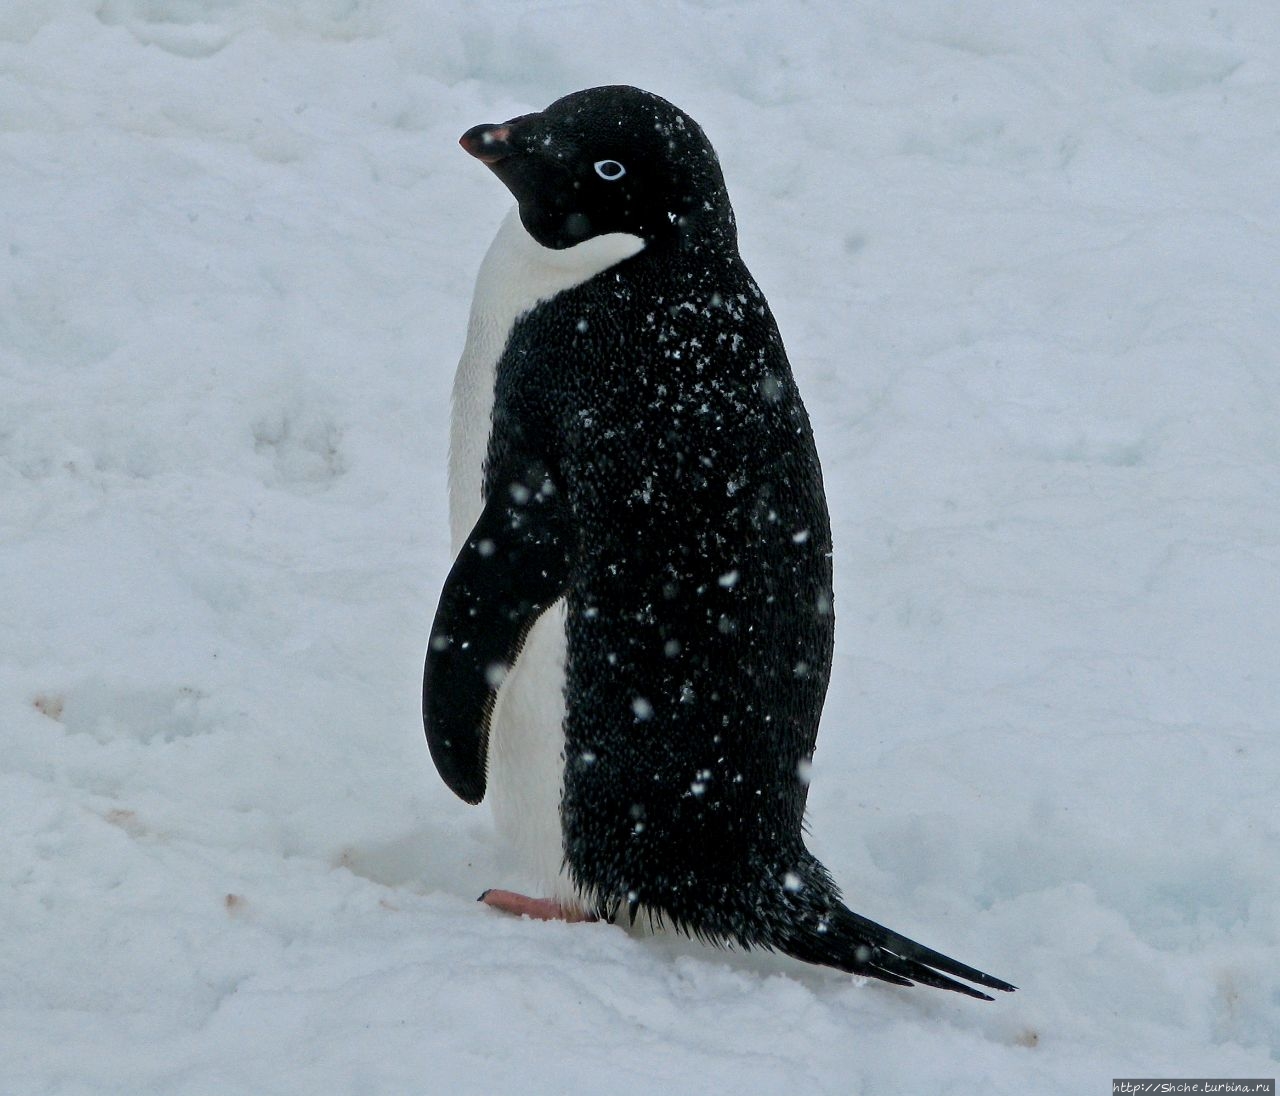 25 апреля — Всемирный день пингвинов (World Penguin Day) Антарктический полуостров, Антарктида